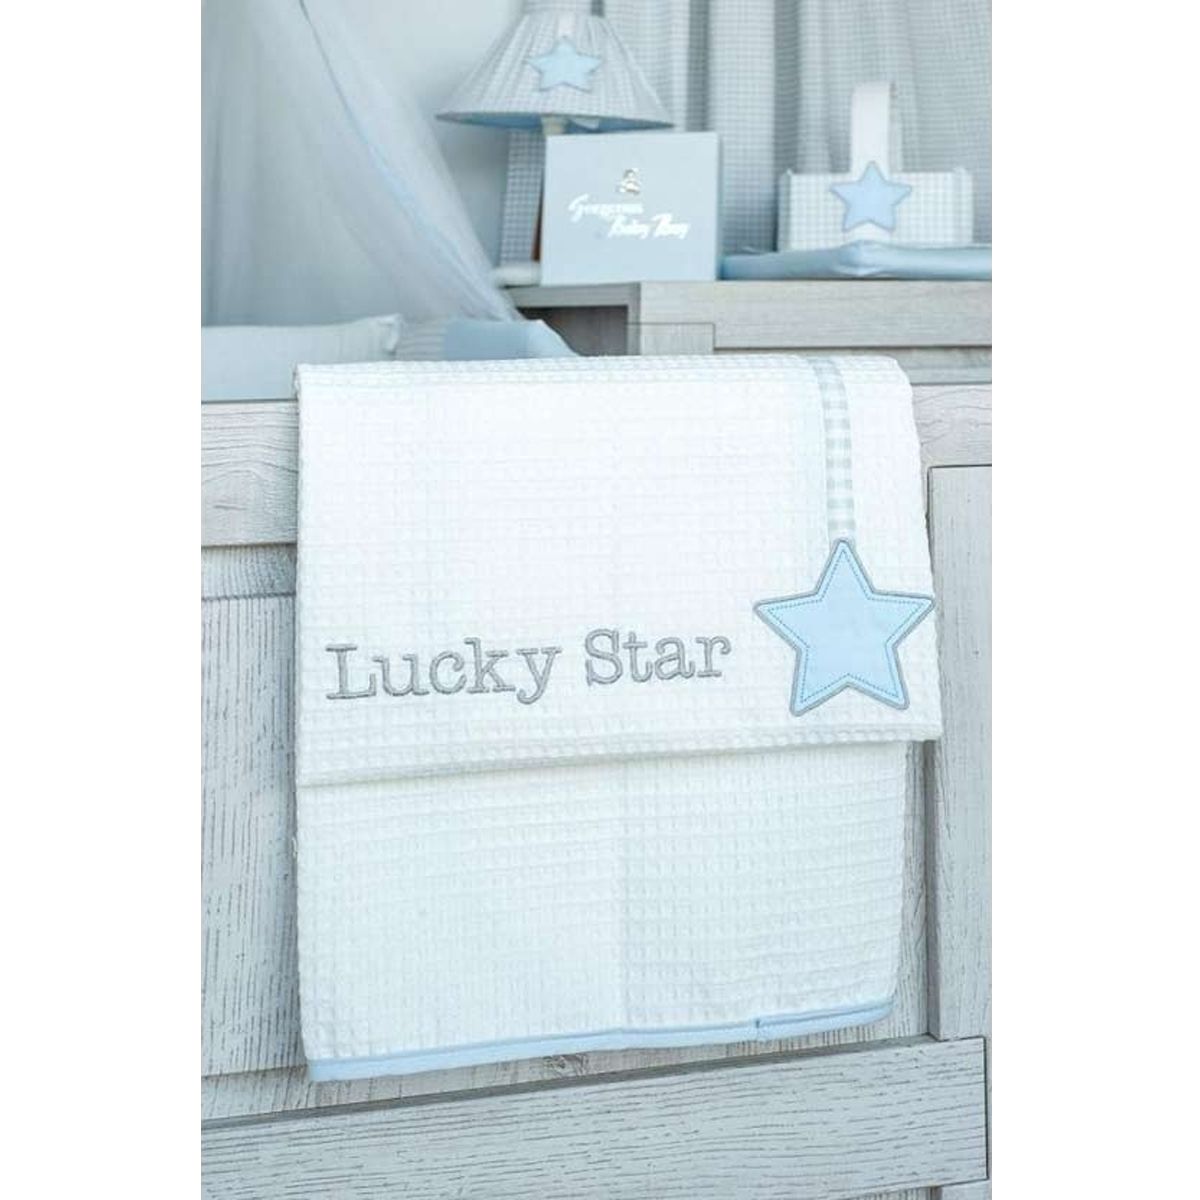 Κουβέρτα πικέ Lucky star blue des.309 baby oliver